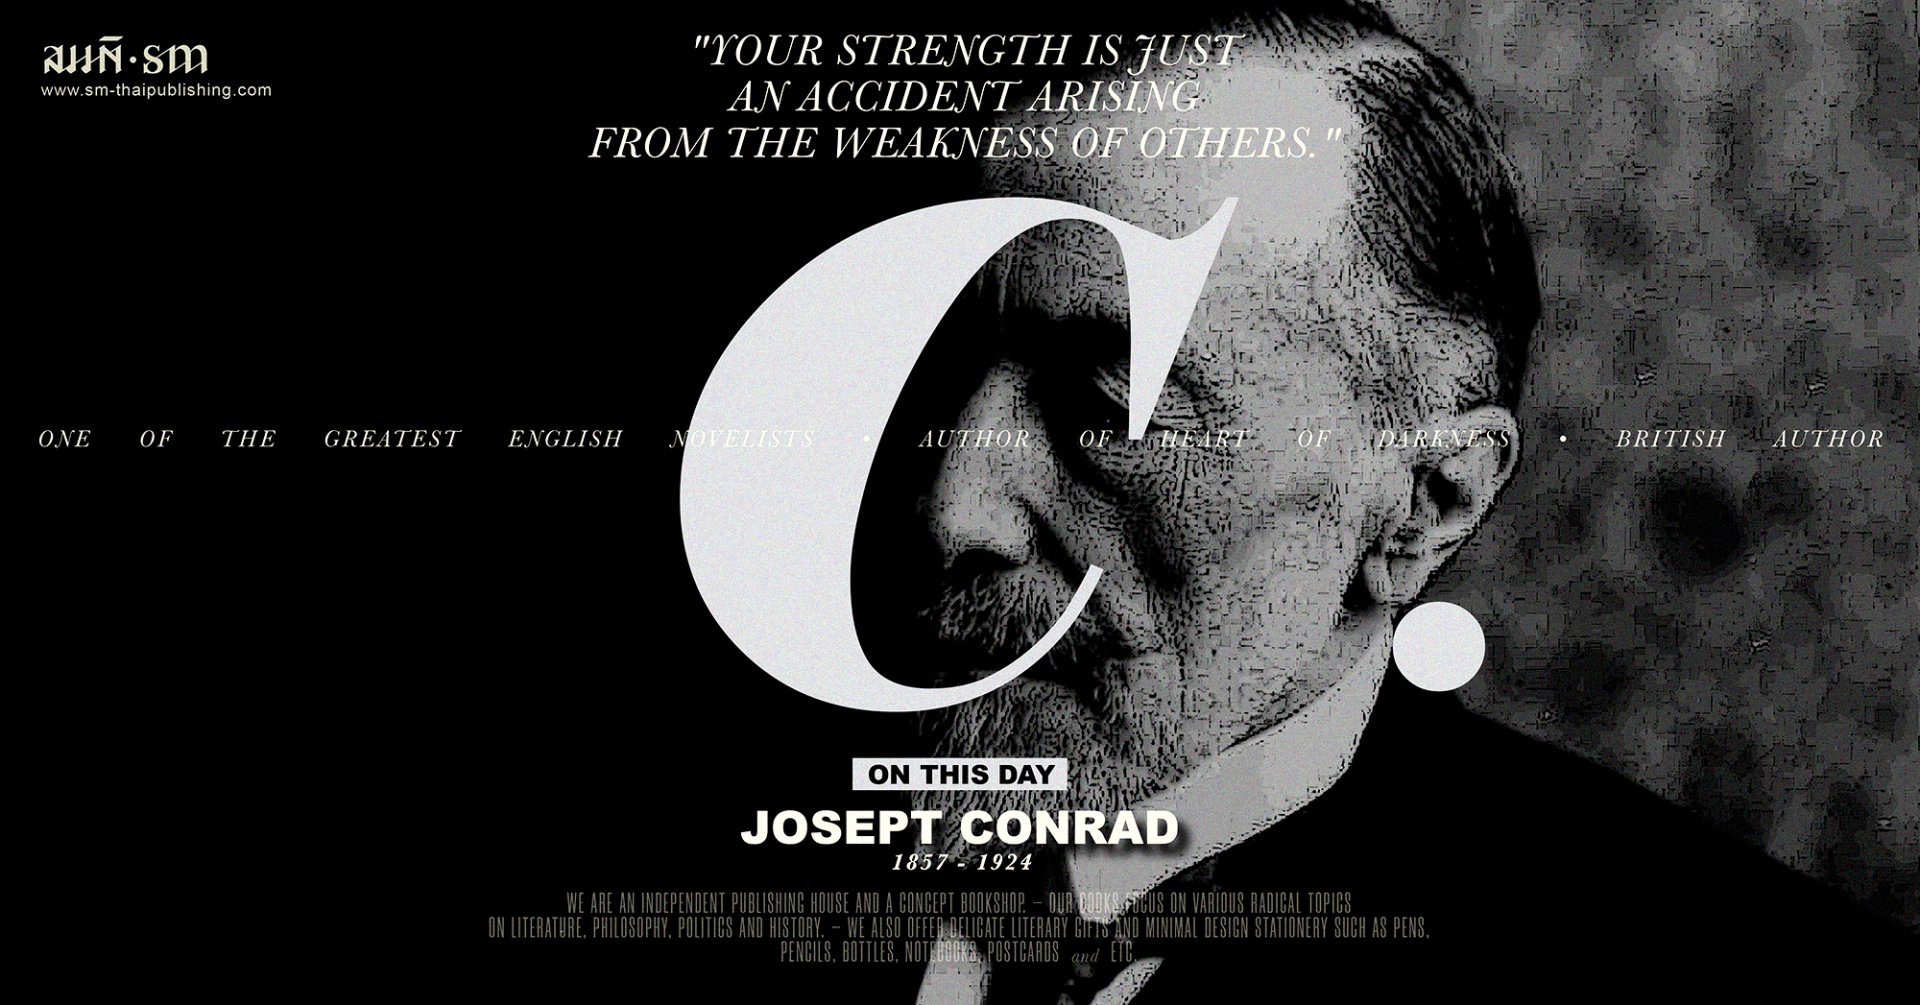 โจเซฟ คอนราด (Joseph Conrad)